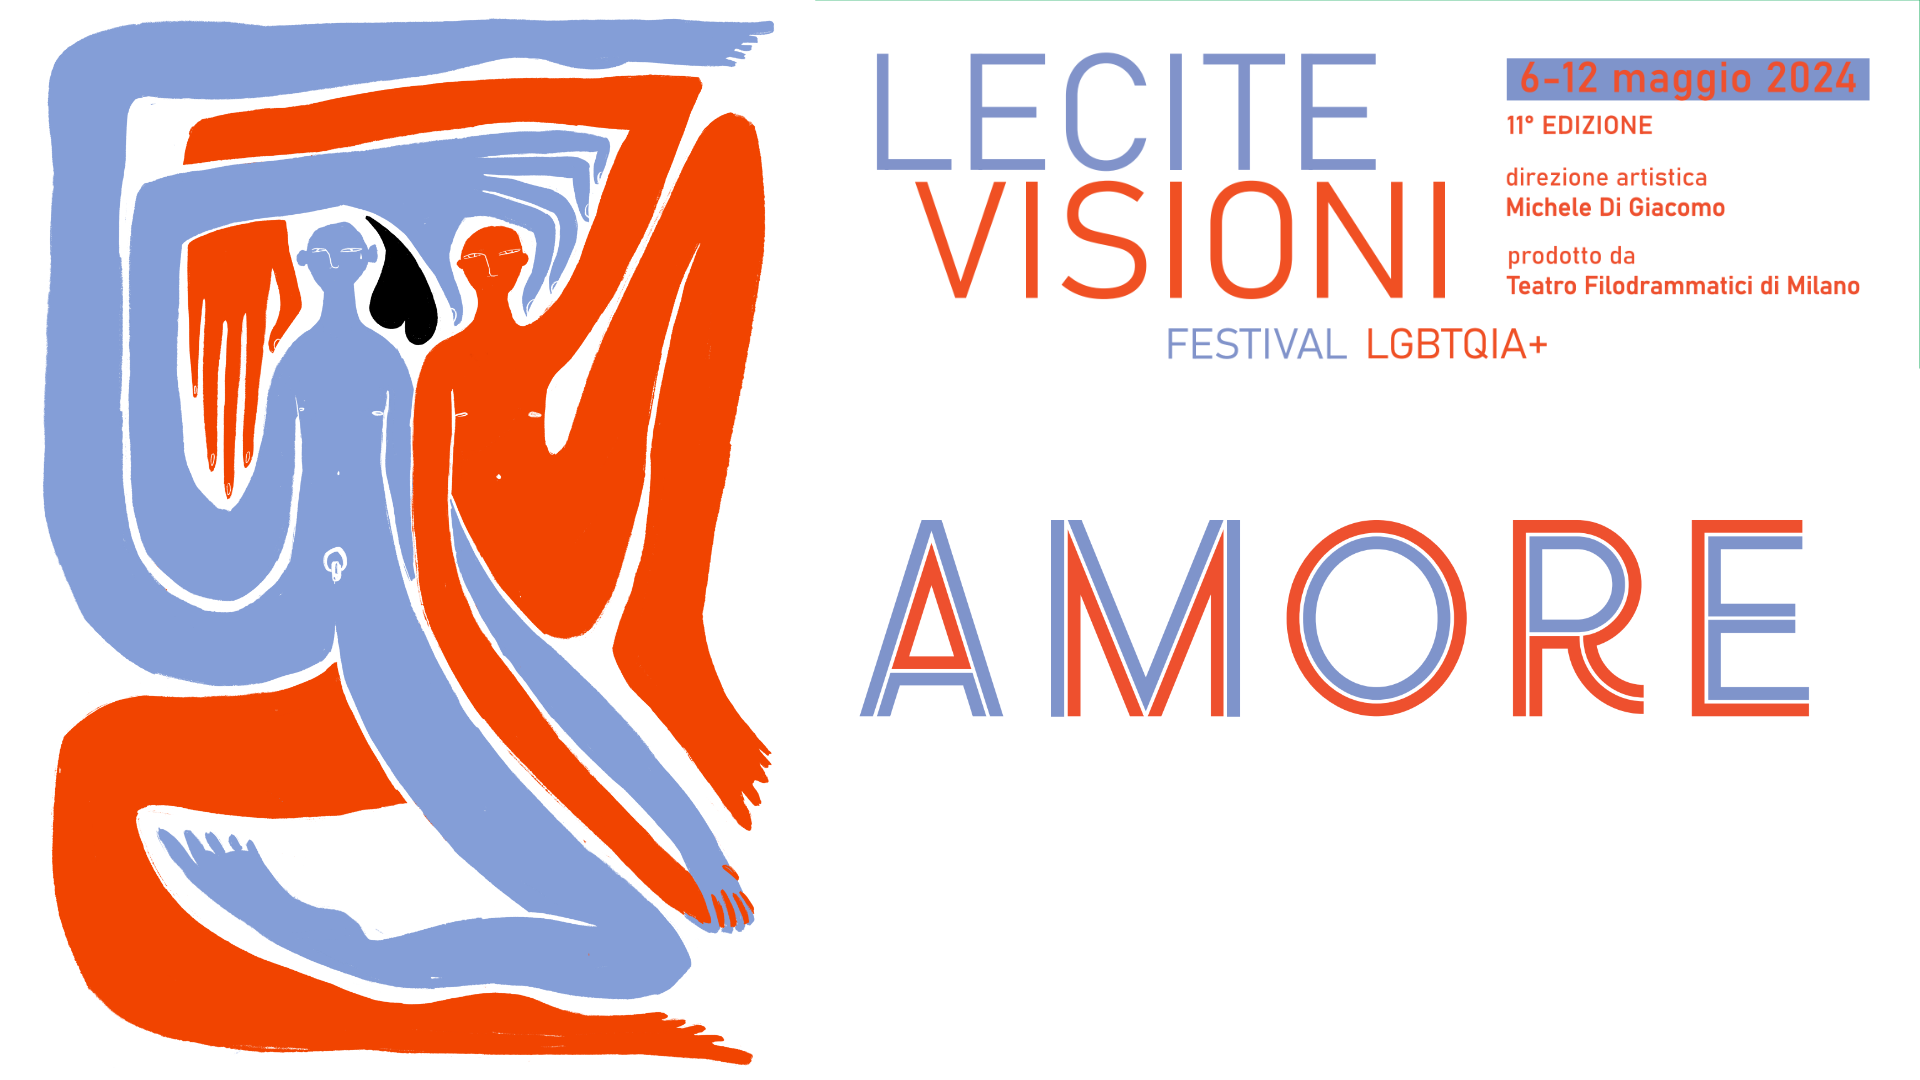 Lecite Visioni festival lgbtqia+